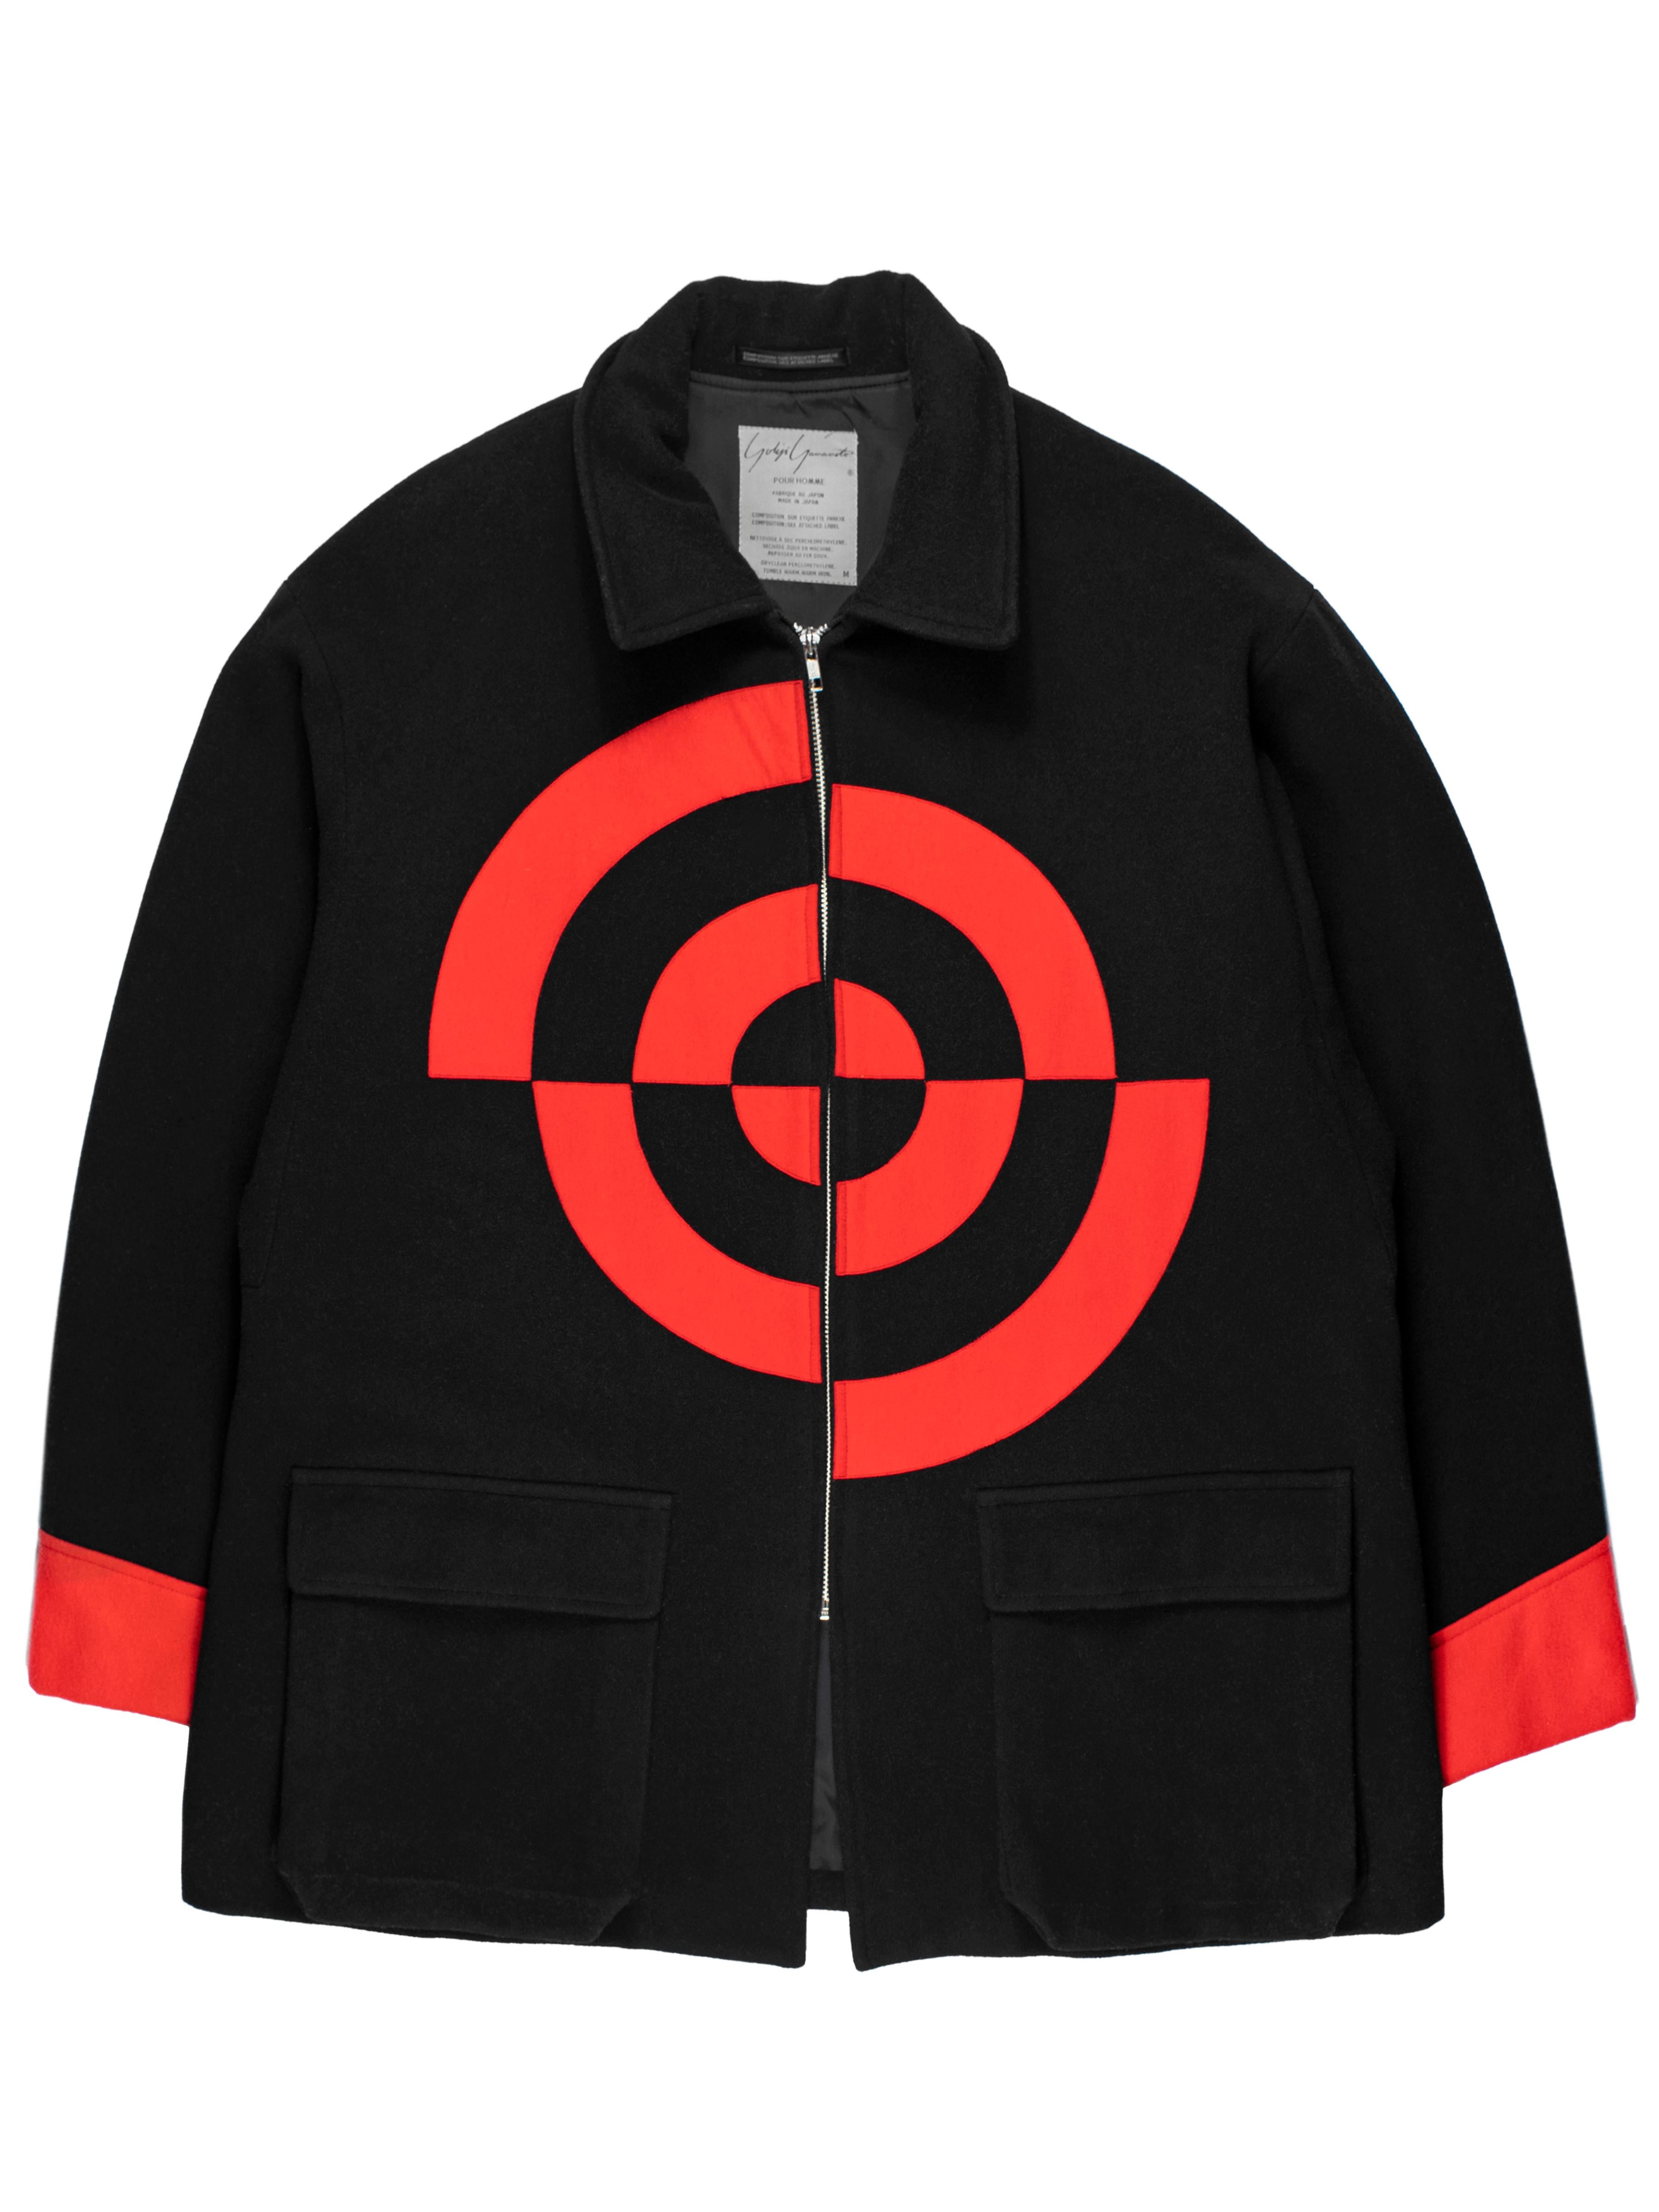 Yohji Yamamoto Pour Homme AW1990 Bullseye Jacket